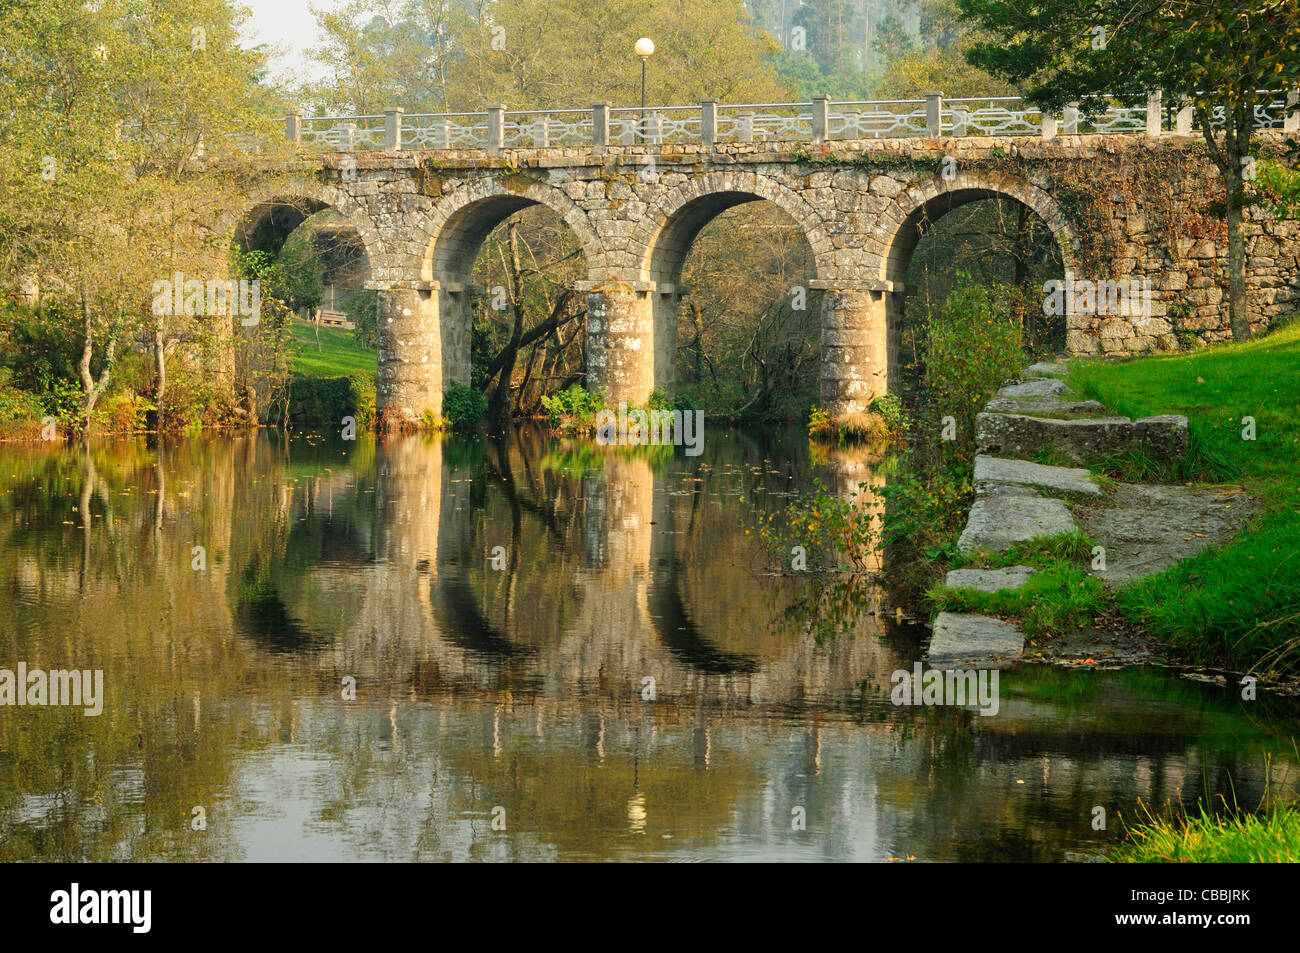 Le pont sur la rivière Verdugo. Un lama, Pontevedra, Galice, Espagne Banque D'Images